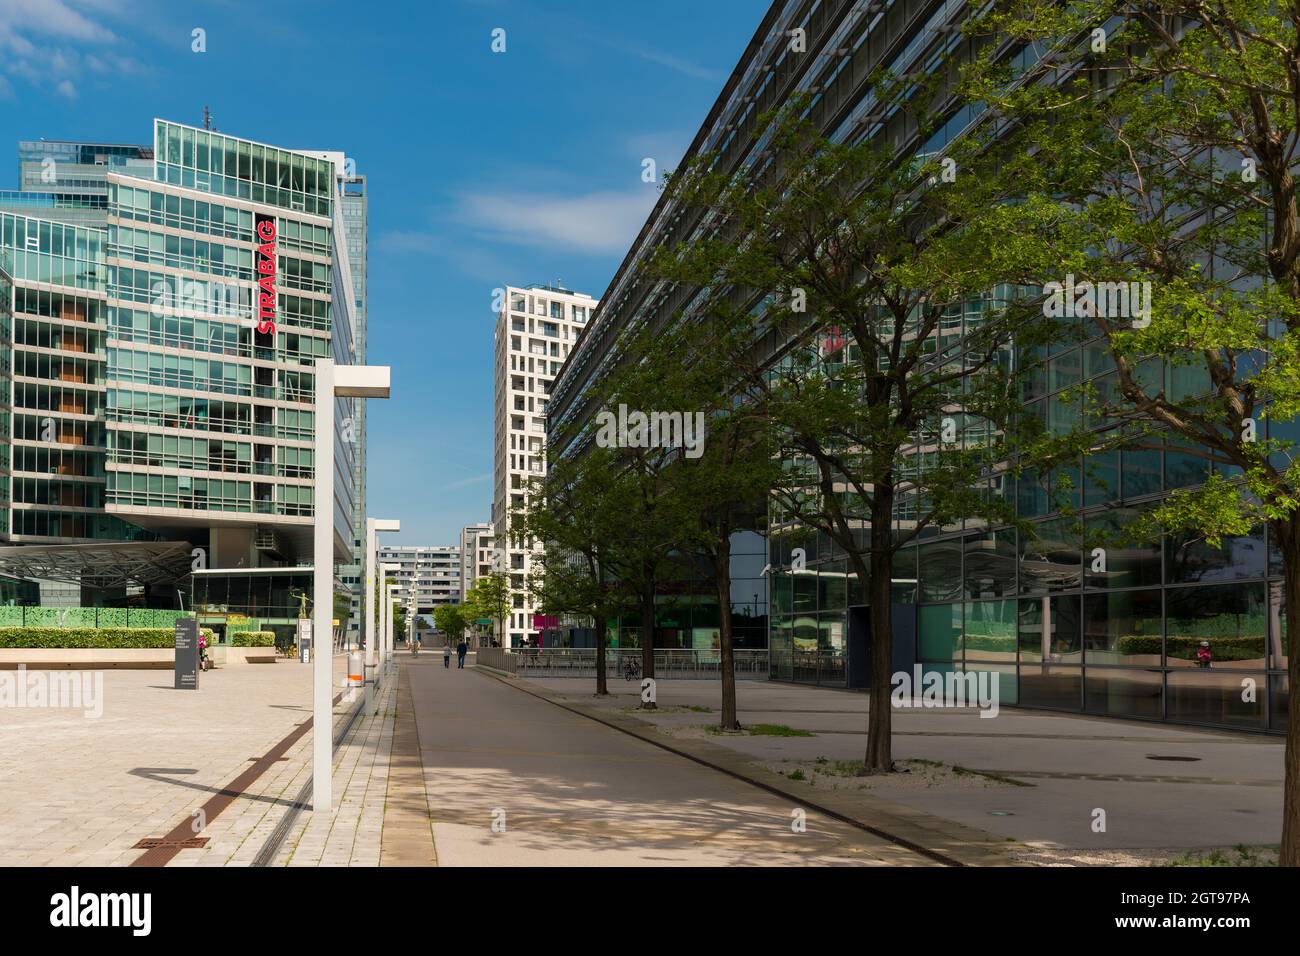 01 juin 2019 Vienne, Autriche - Donaucity, bâtiment du siège STRABAG AG, société immobilière à Tech Gate de Donaustadt. Jour d'été ensoleillé Banque D'Images